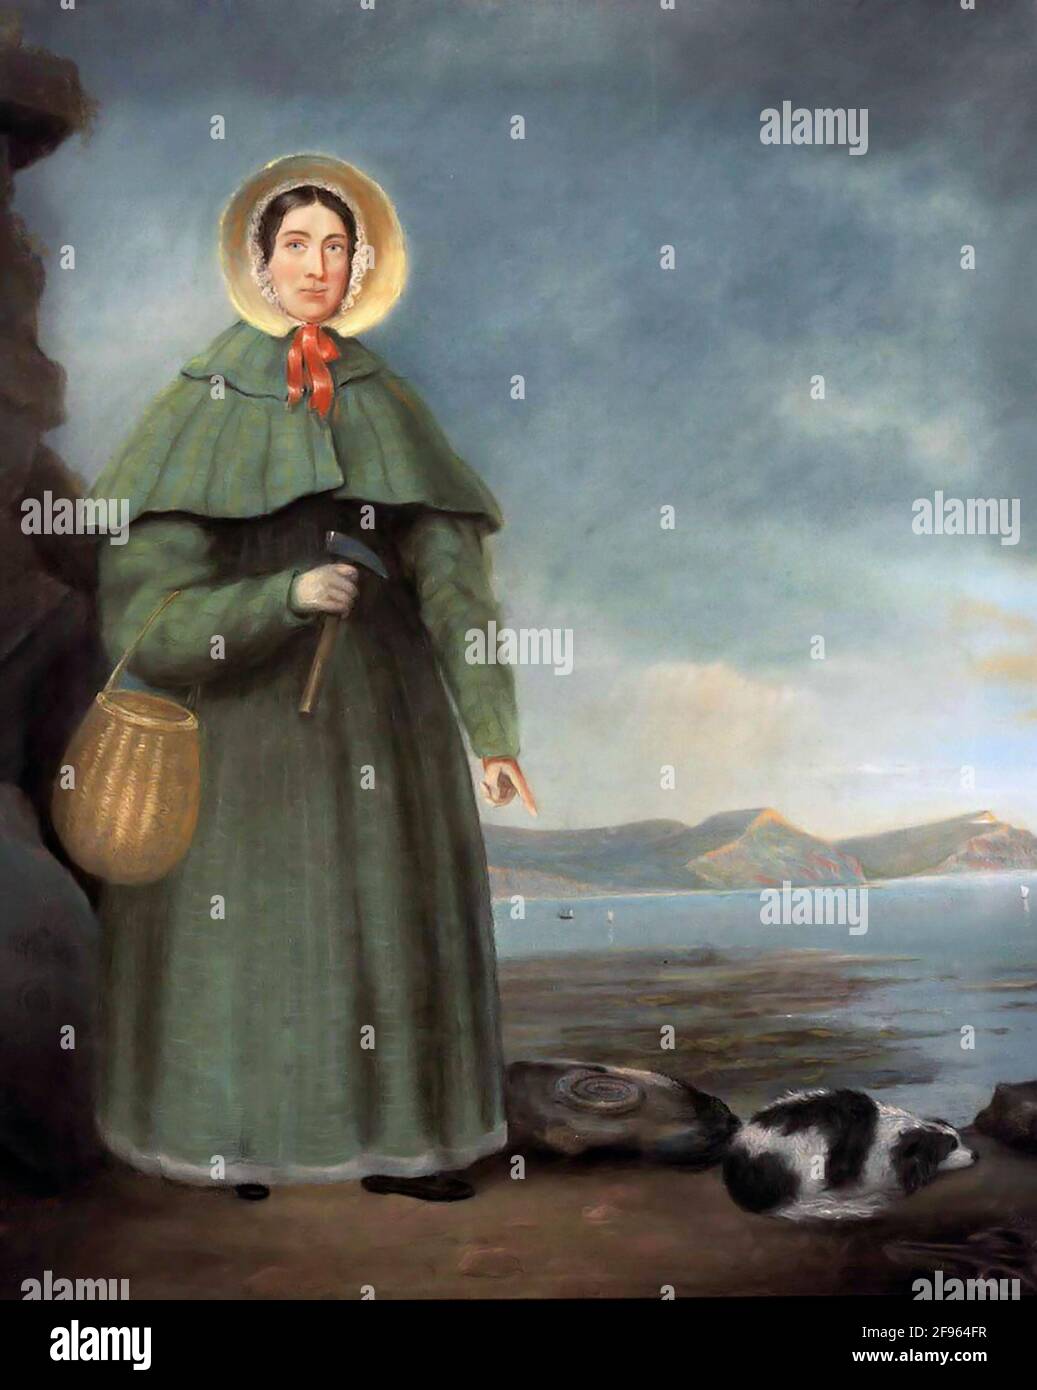 Mary Anning. Portrait du collectionneur et paléontologue de fossiles anglais, Mary Anning (1799-1847), copie d'un portrait de 1842. Banque D'Images